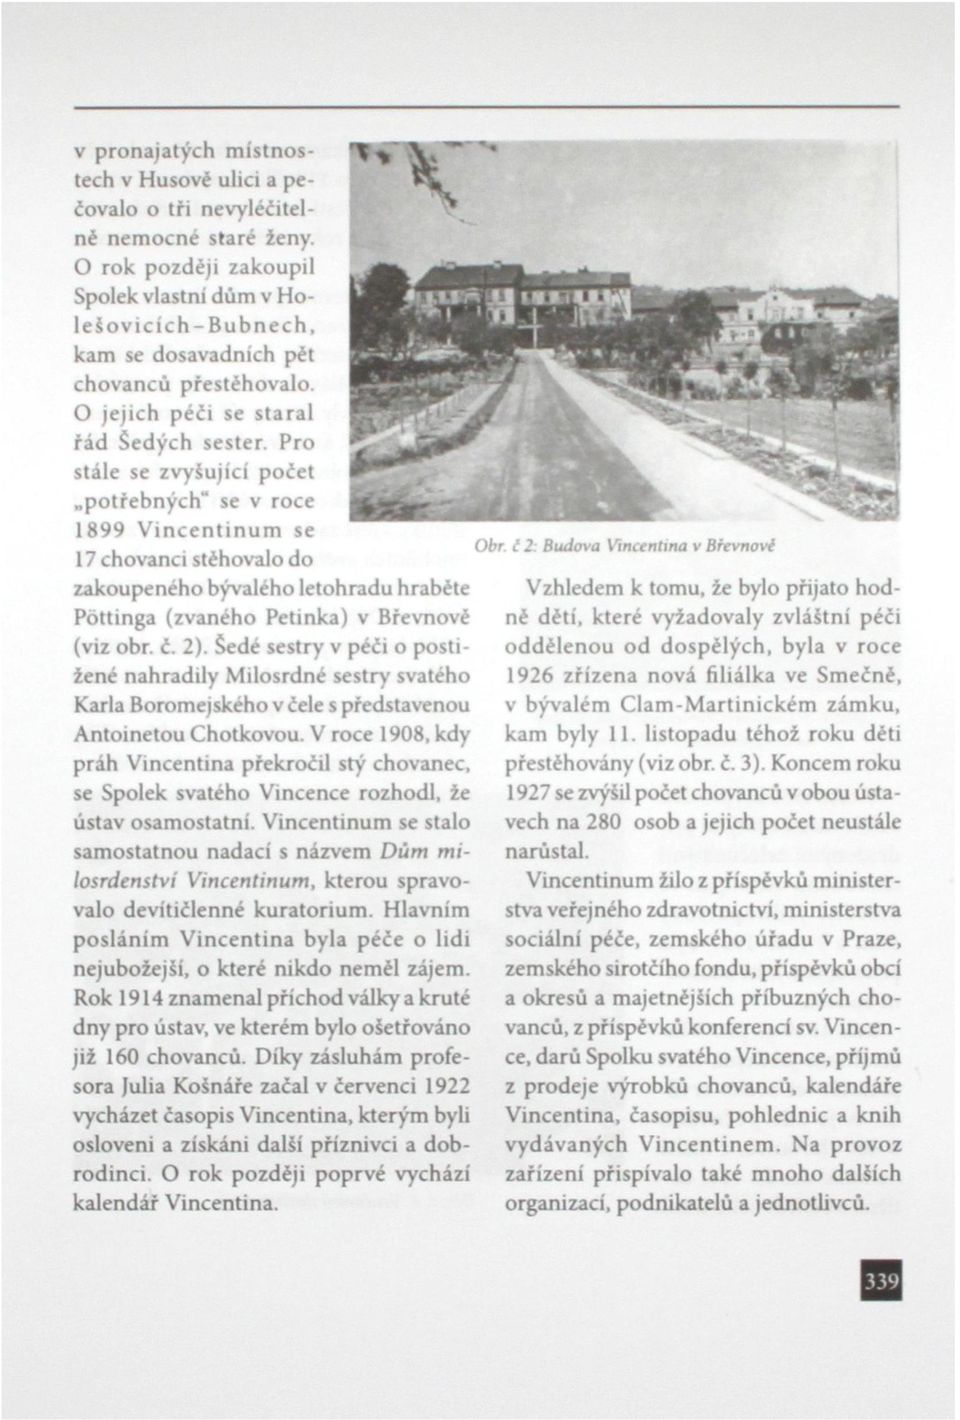 Pro stále se zvyšující počet potřebných" se v roce 1899 Vincentinum se 17 chovanci stěhovalo do zakoupeného bývalého letohradu hraběte Pottinga (zvaného Petinka) v Břevnové (viz obr. č. 2).